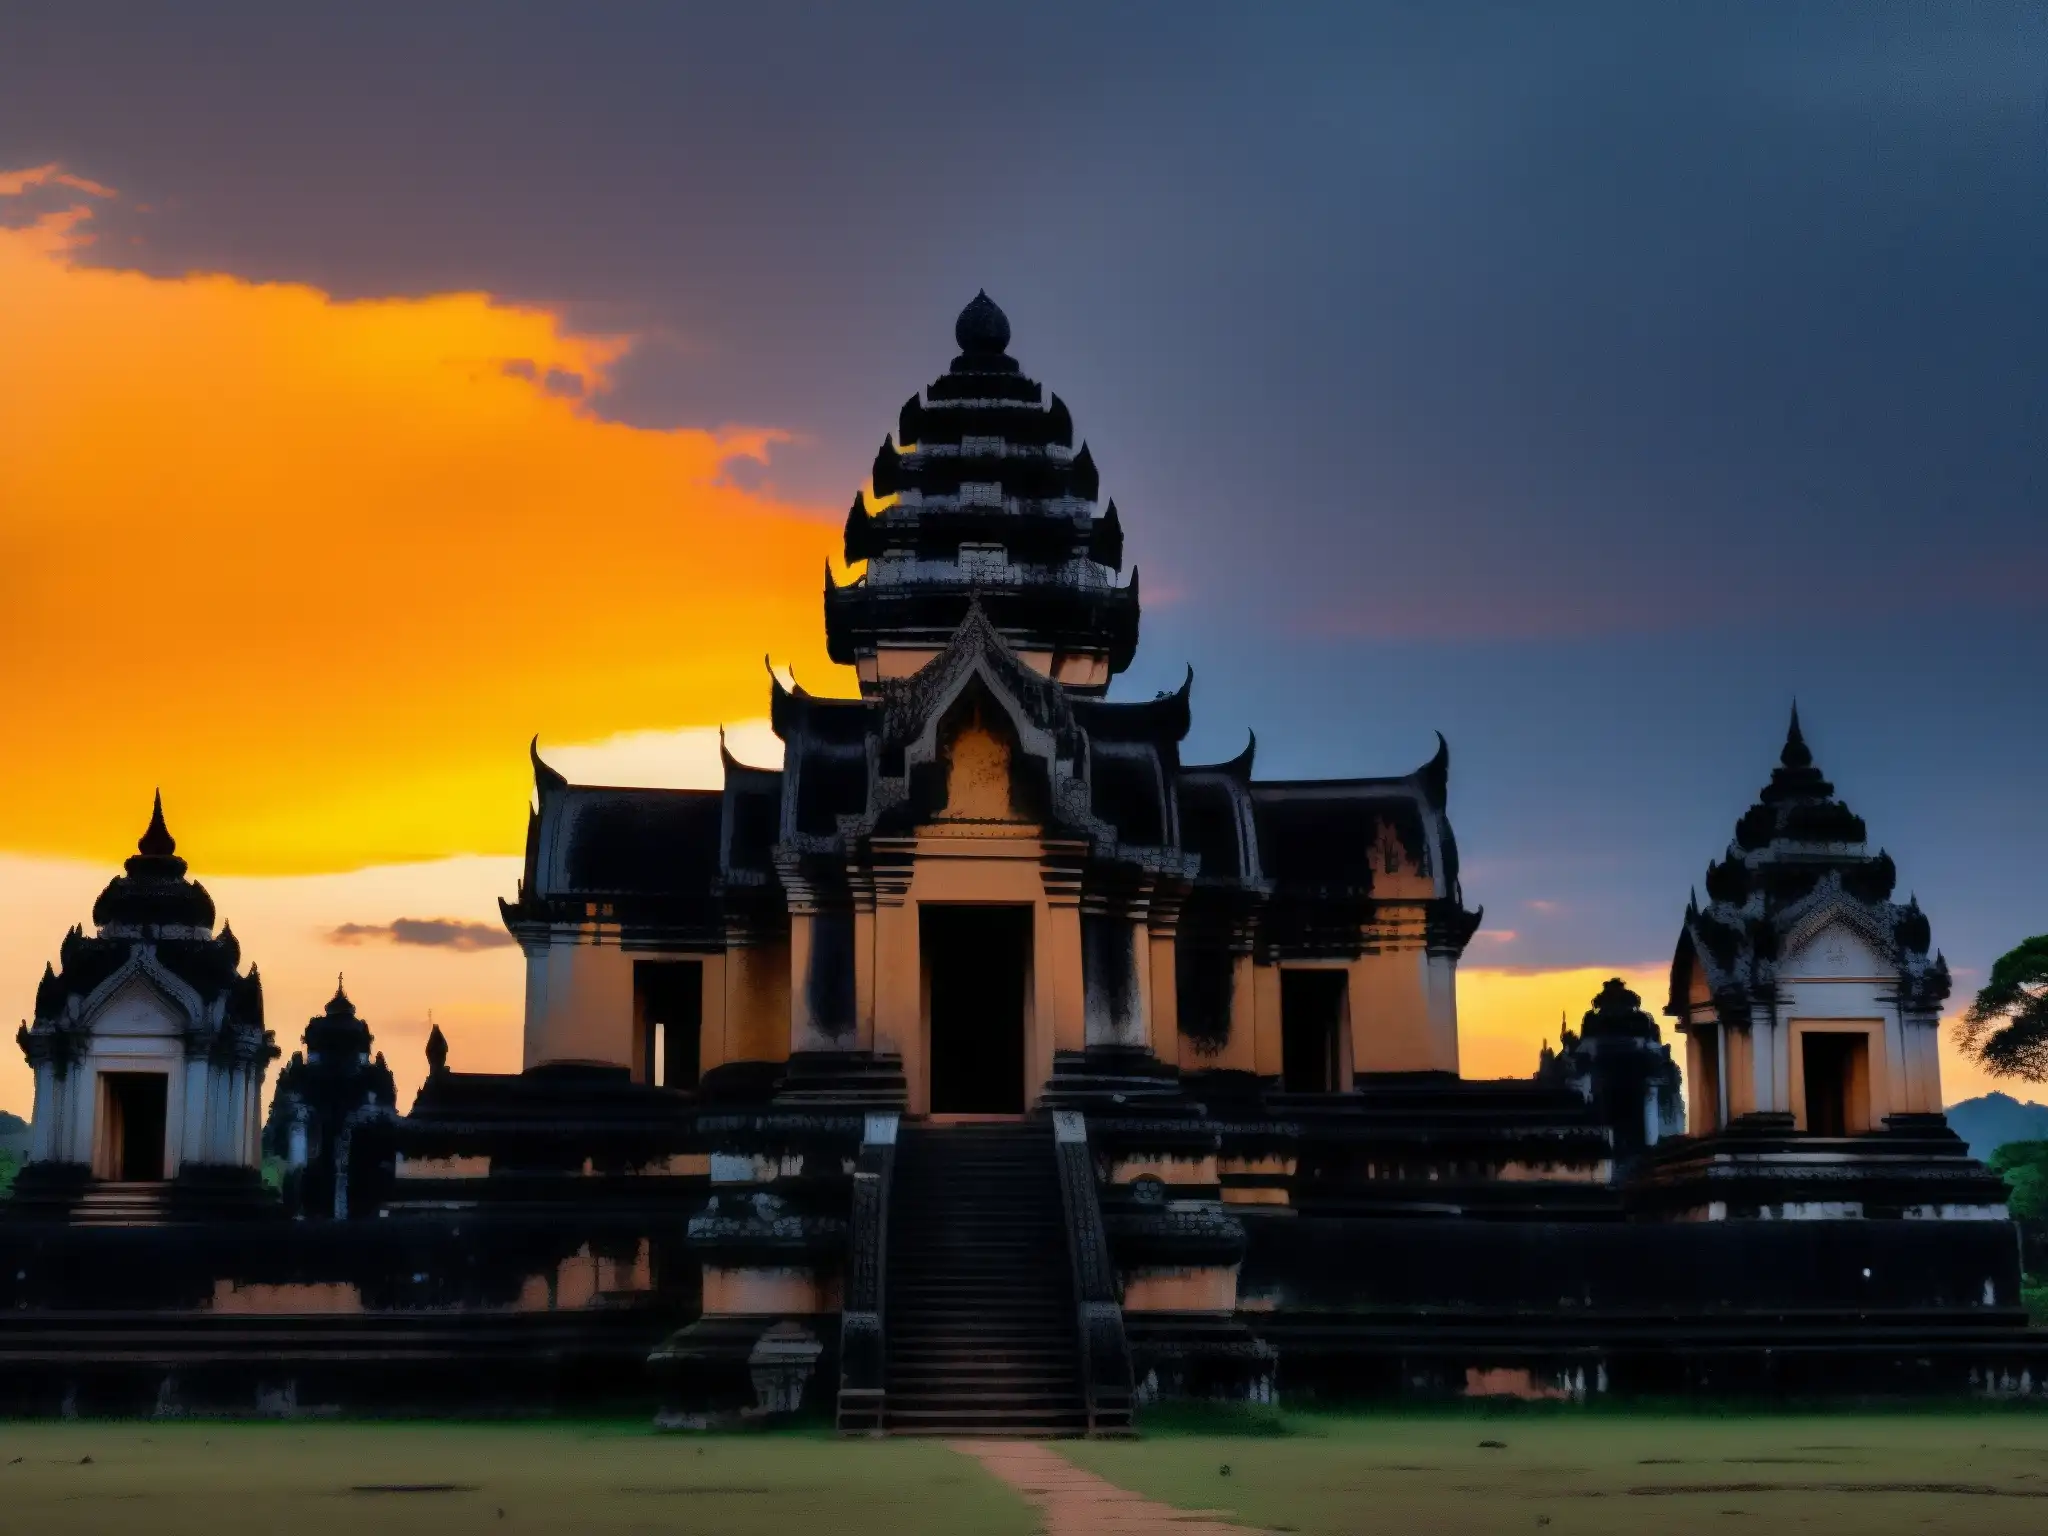 El imponente Templo Preah Vihear se yergue en la misteriosa luz dorada del atardecer, evocando leyendas y maldiciones ancestrales